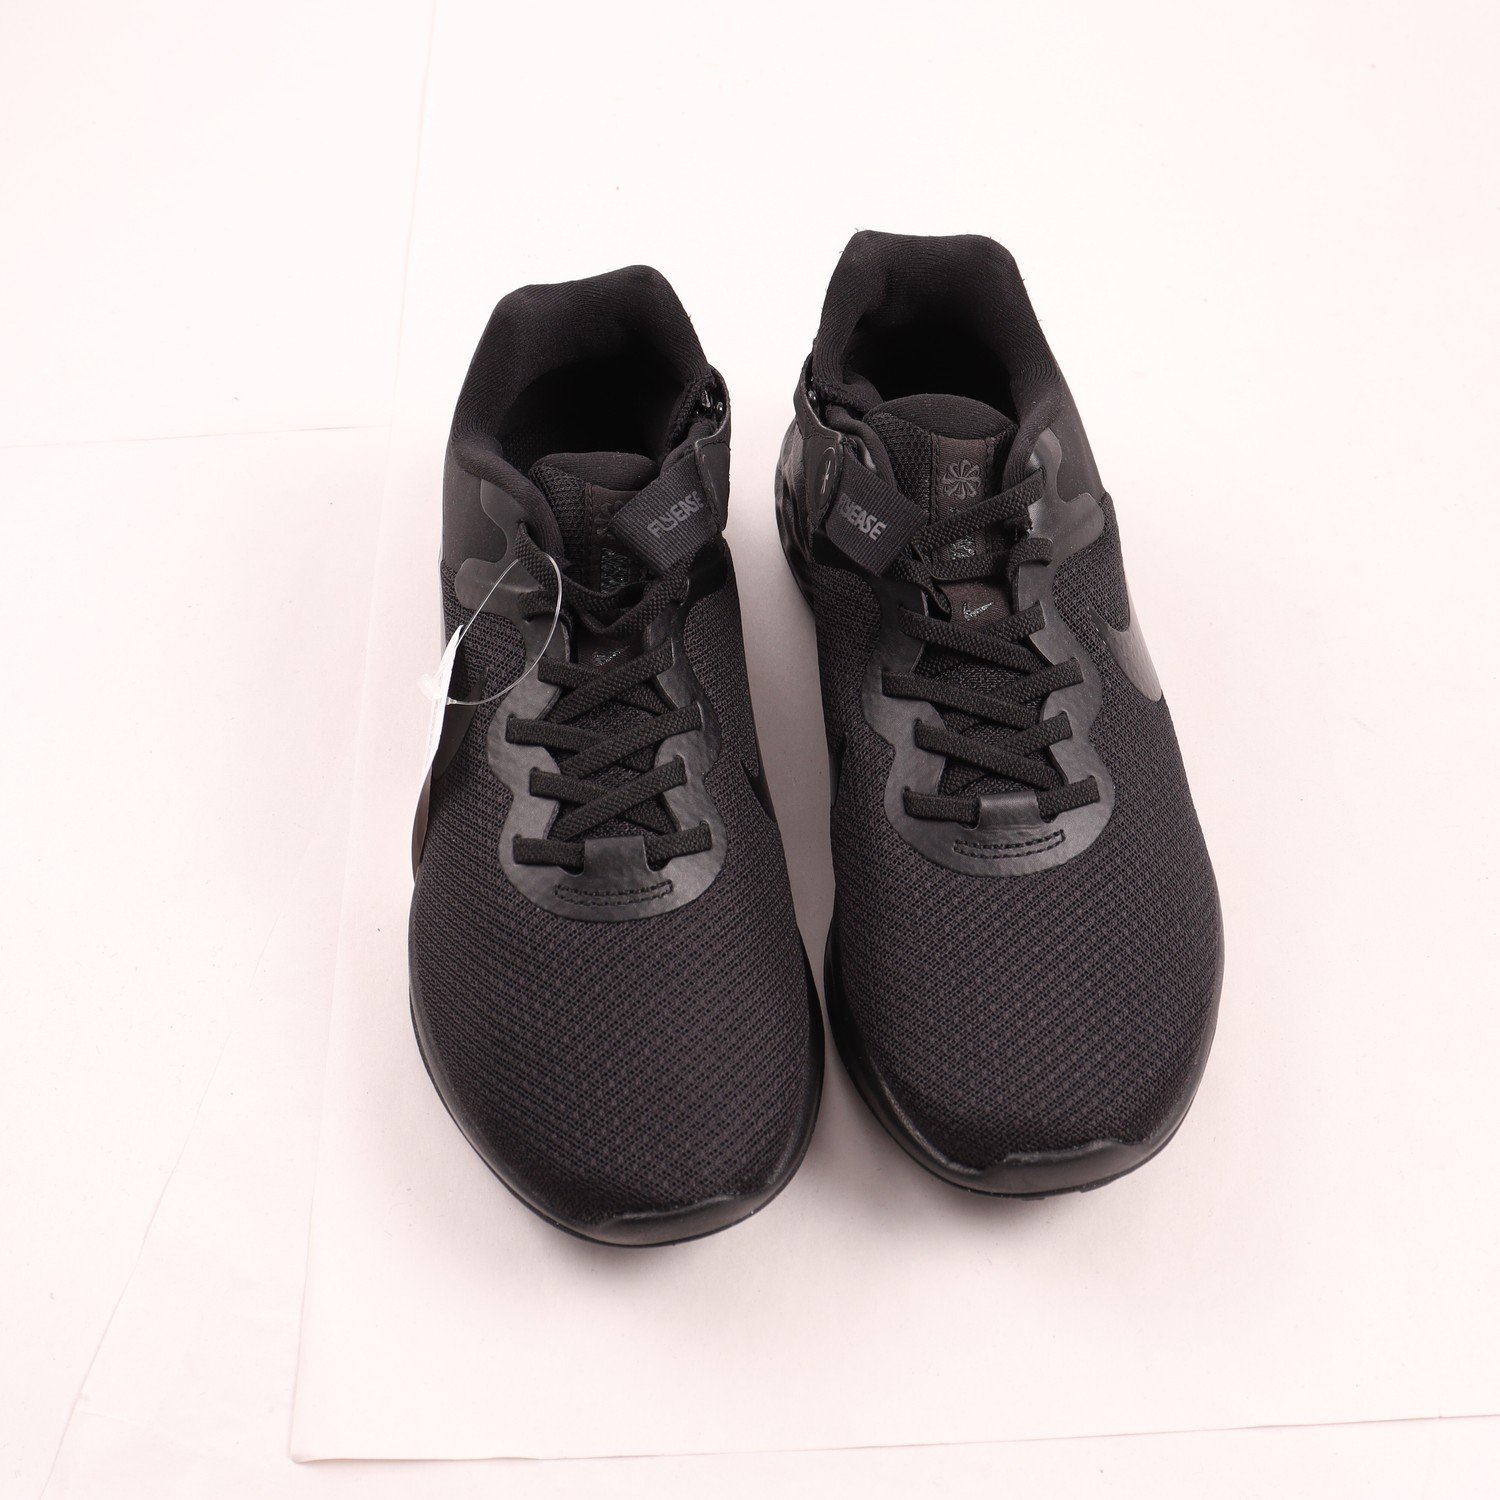 Sneakers, Nike, svart, stl. 40,5